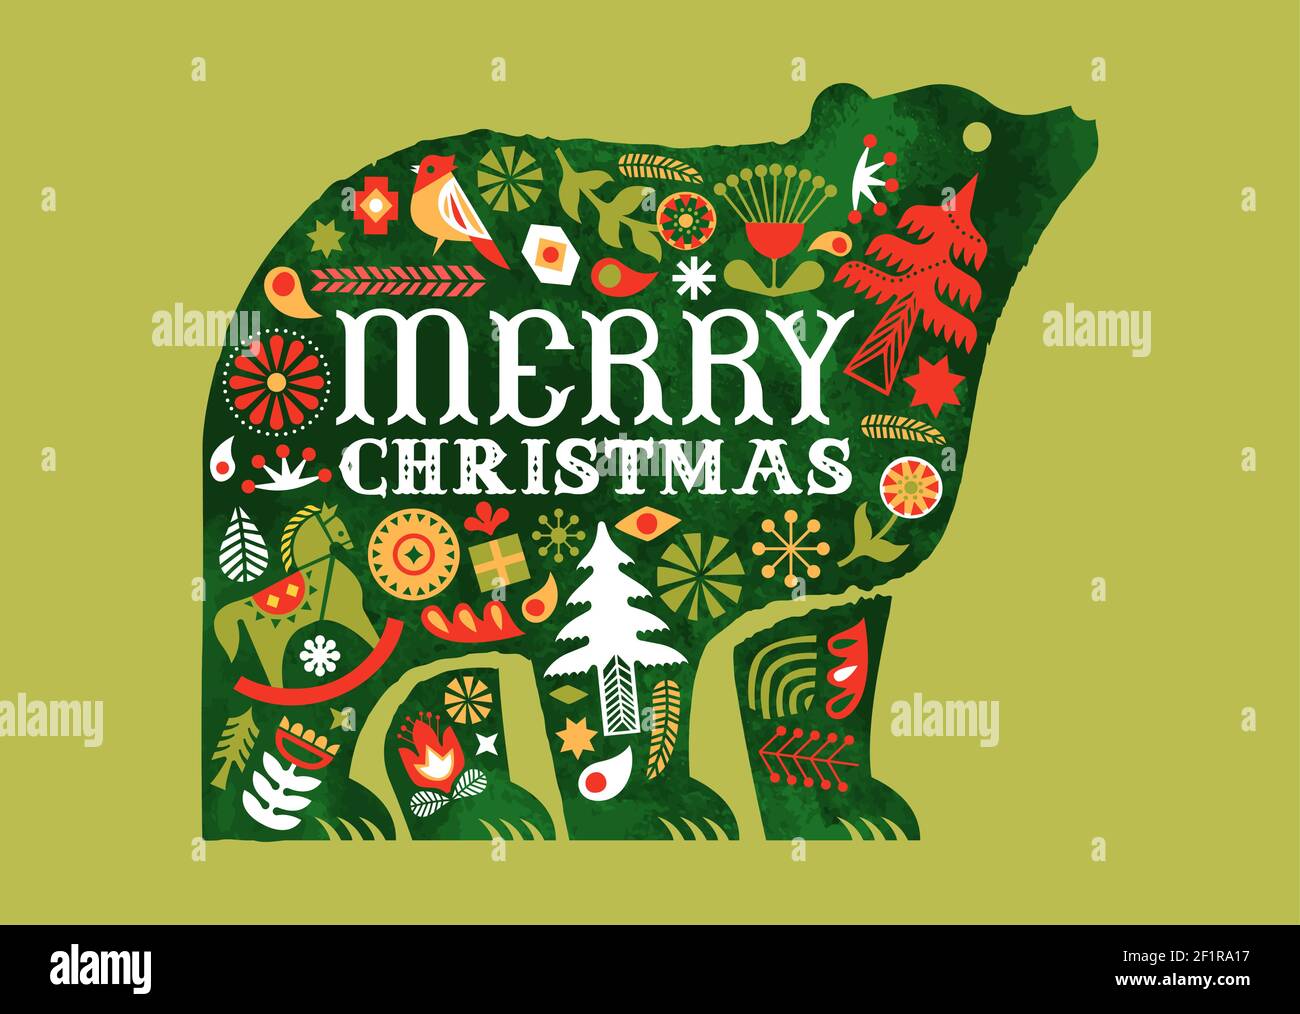 Frohe Weihnachten Retro Volkskunst Grußkarte, traditionelle nordische Dekoration in Aquarell Bär Tier für Urlaubseinladung oder saisonale Grüße. Zoll Stock Vektor